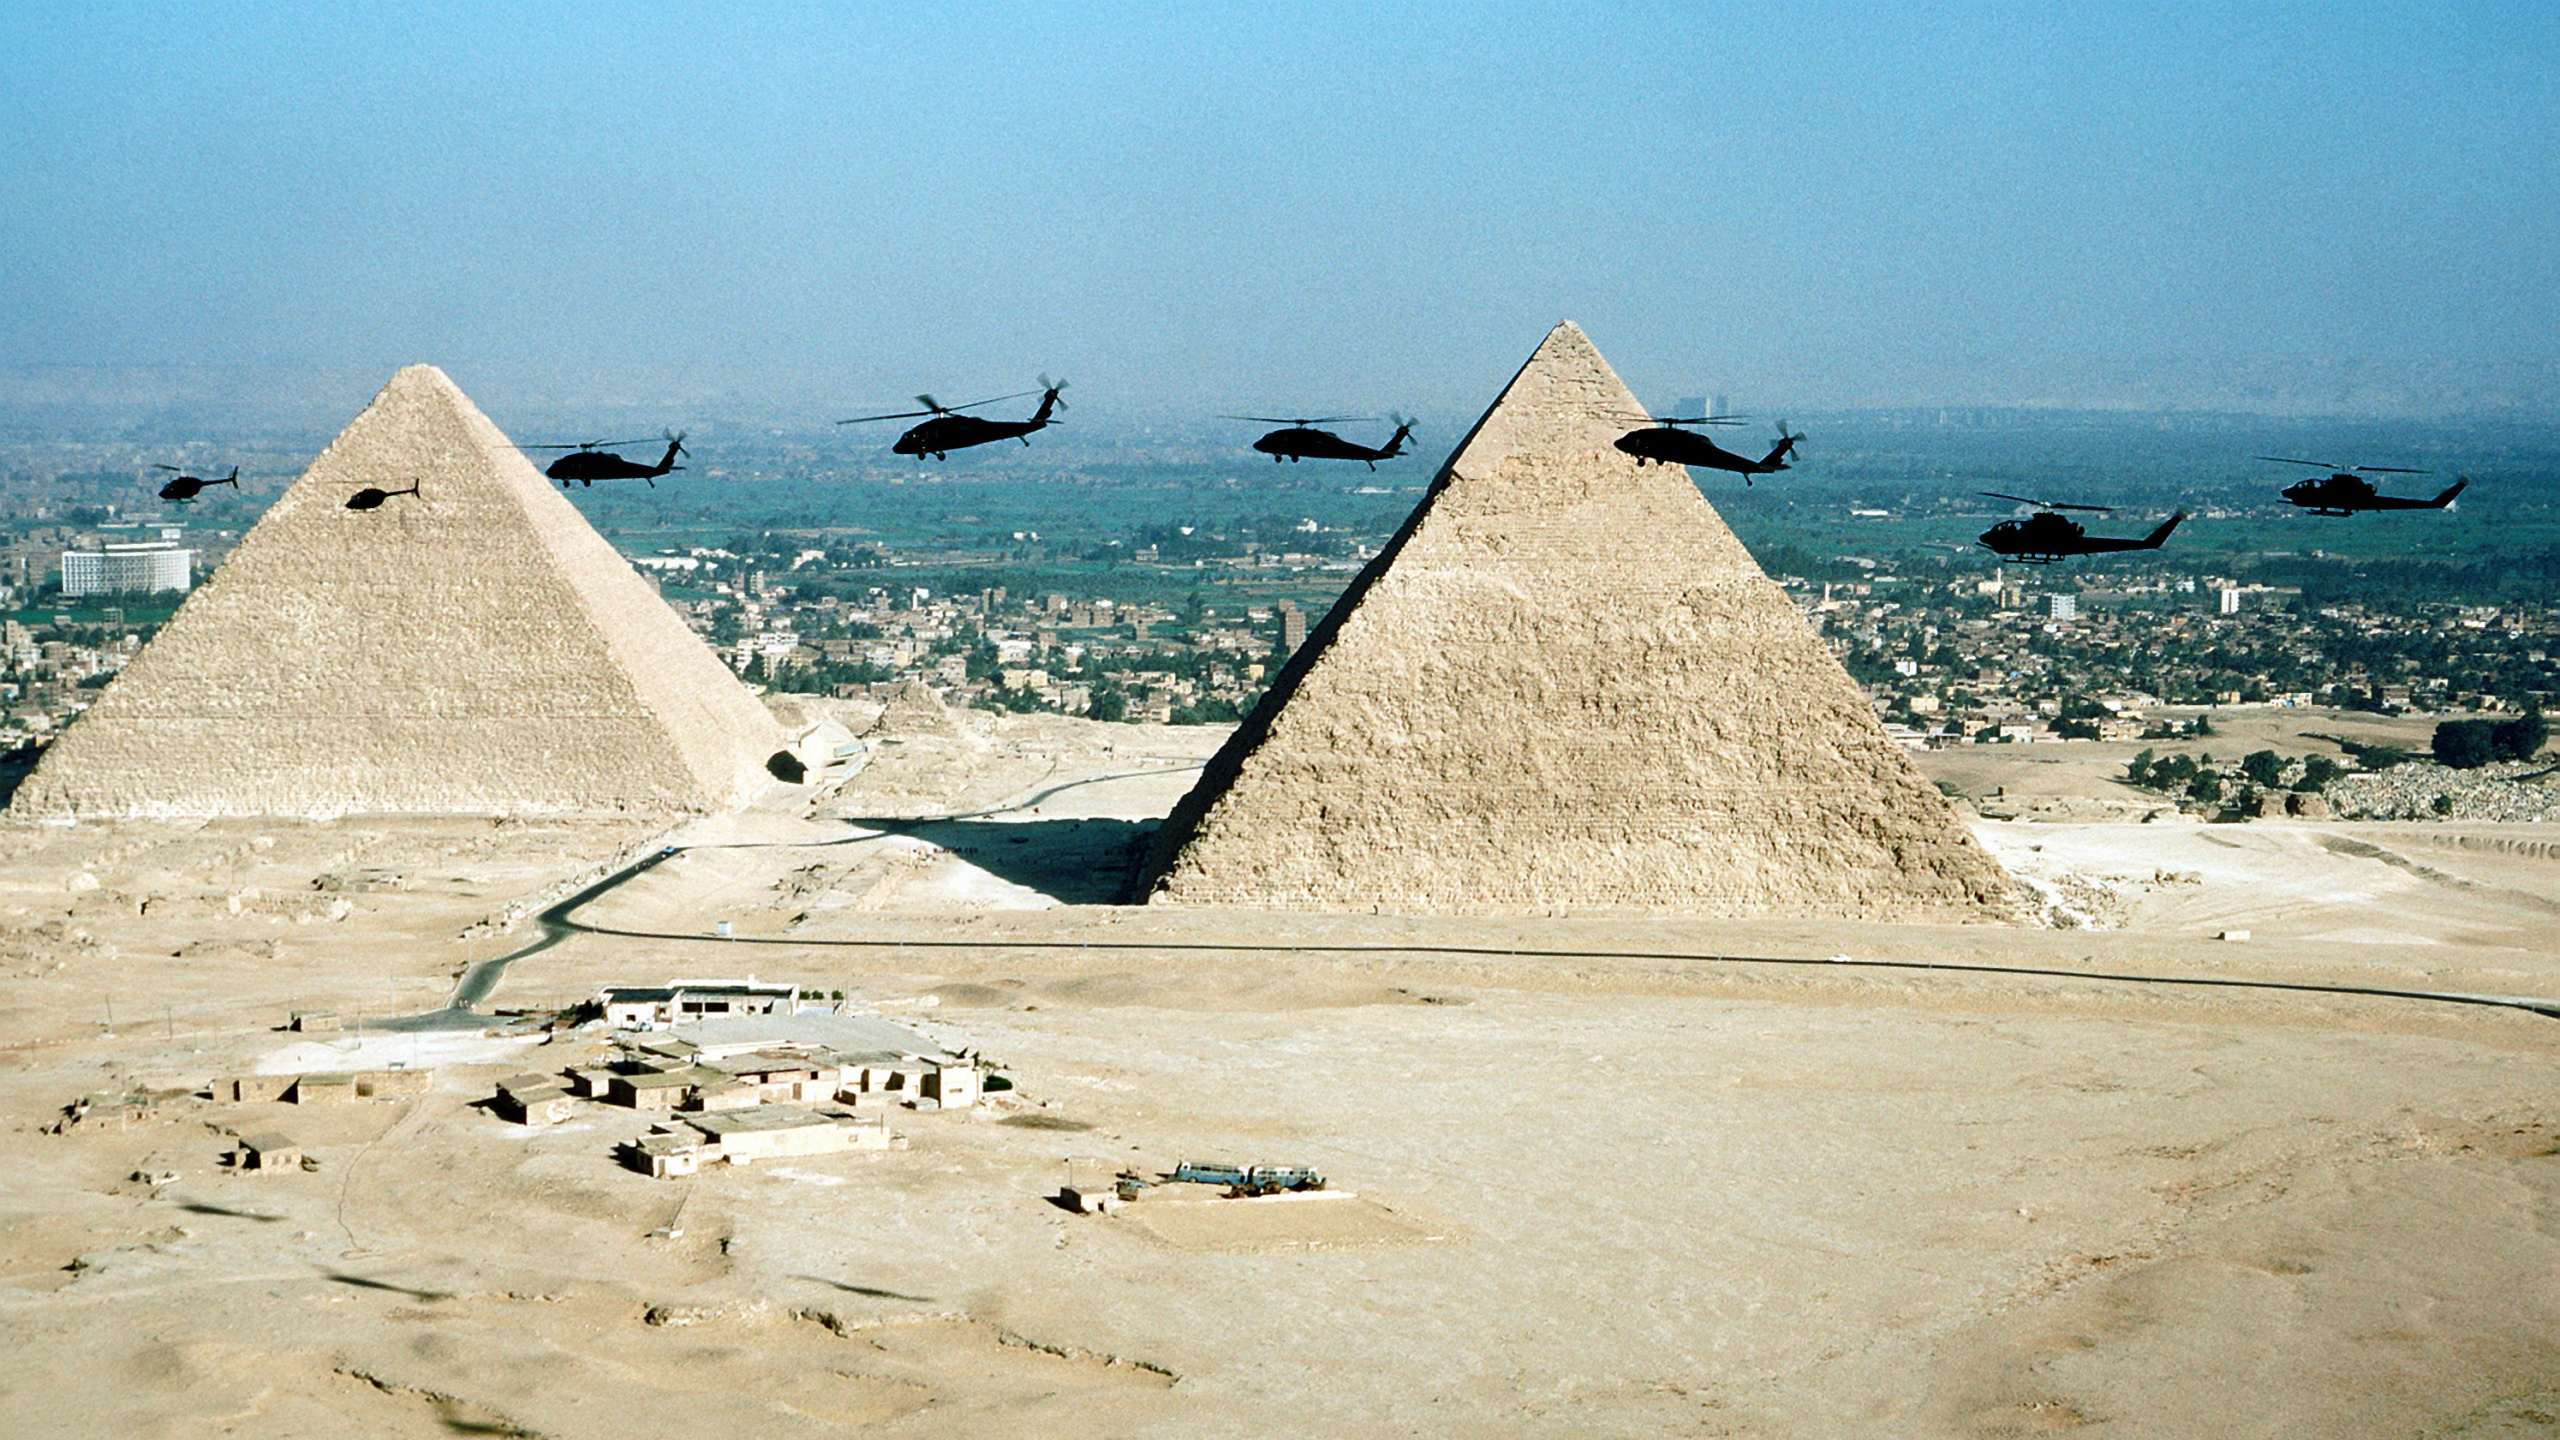 金字塔, 纪念碑, 沙, 大海, 度假 壁纸 2560x1440 允许